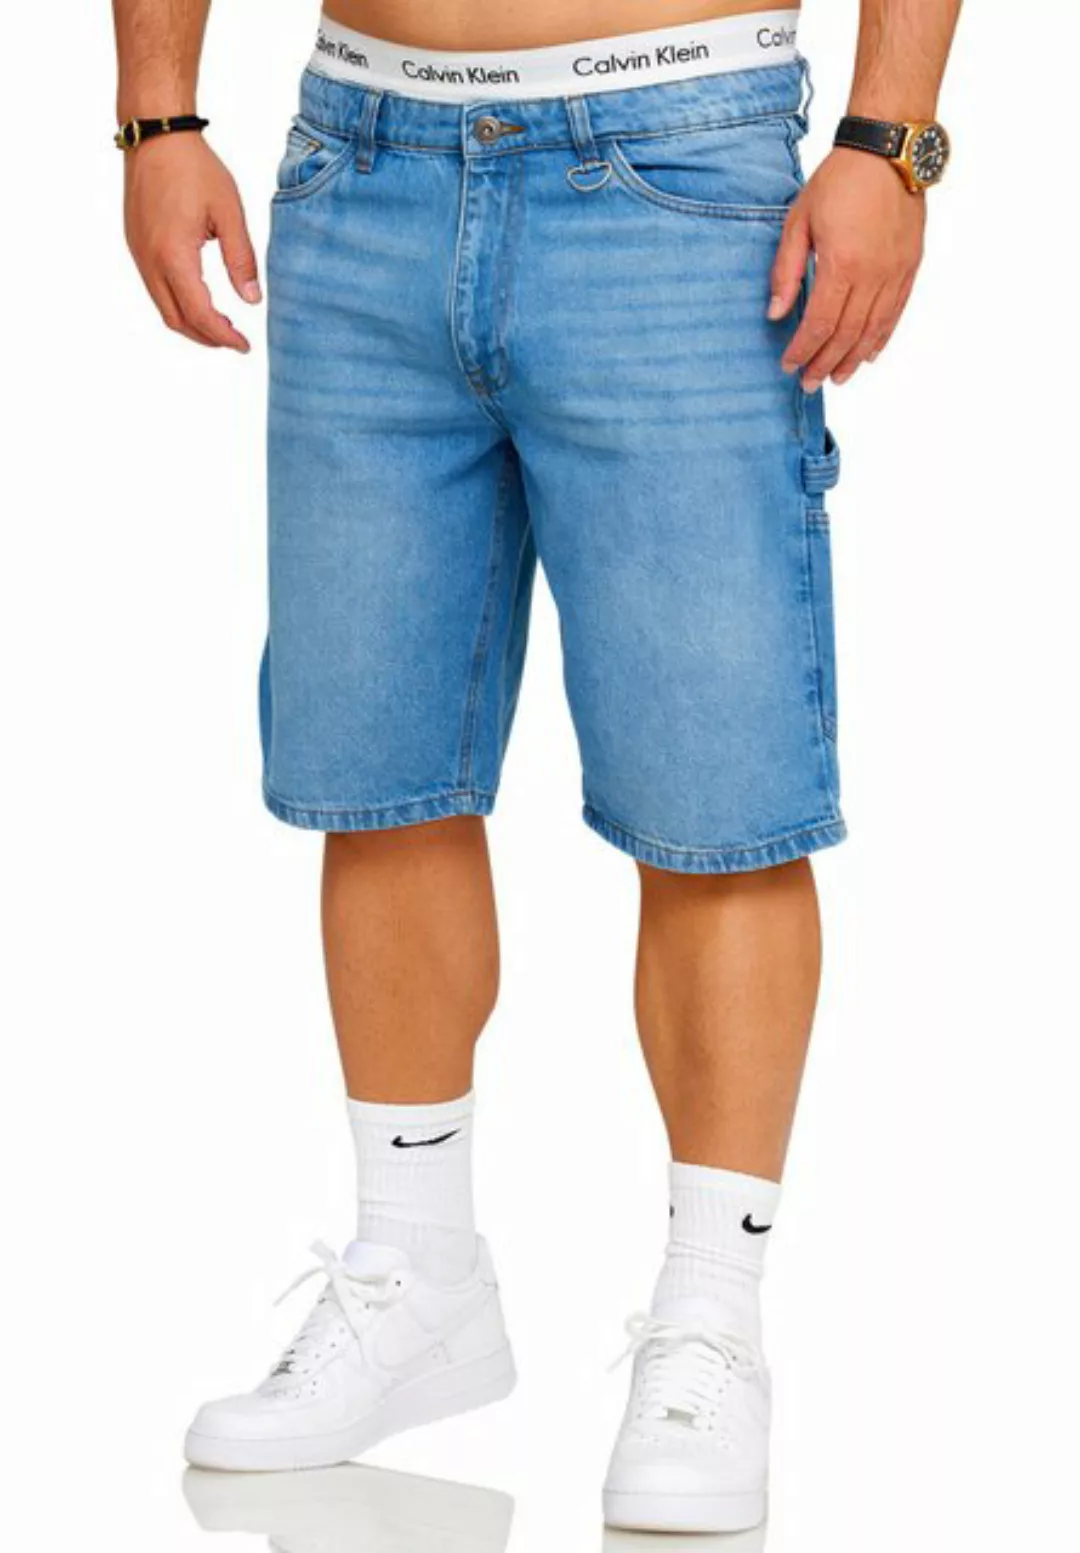 SOULSTAR Jeansshorts S2SAAR Herren Kurze Hose Carpenter Jeans Shorts Bermud günstig online kaufen